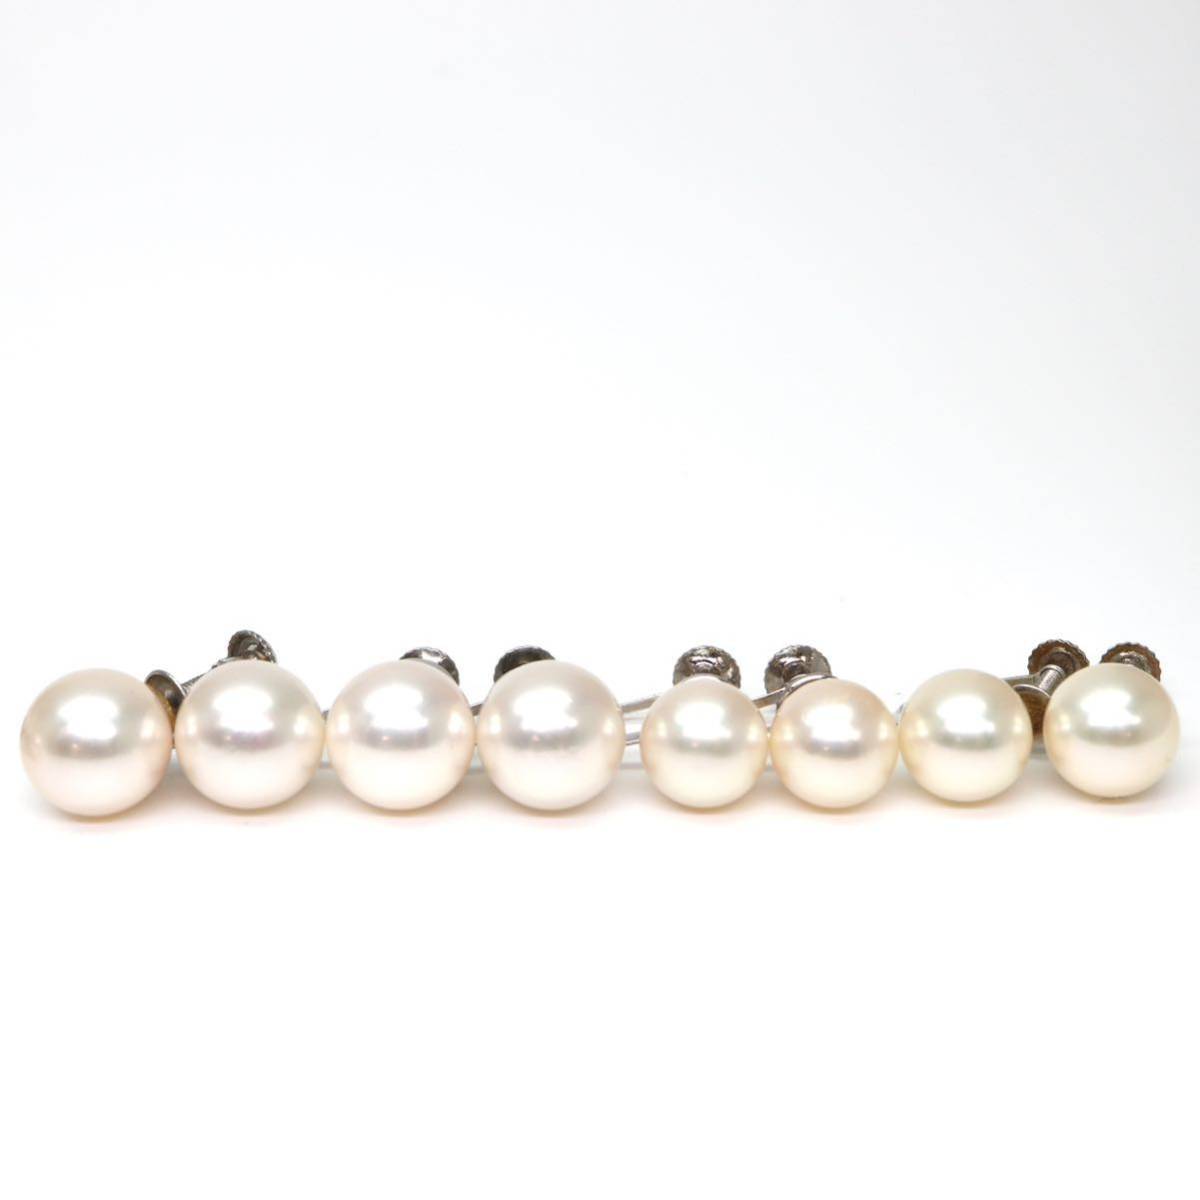 ◆Pt900/Pt850/K14 アコヤ本真珠 イヤリング10点おまとめ◆A 約23.3g 7.0-8.5mm珠 パール pearl ジュエリー earring pierce jewelry EC6の画像6